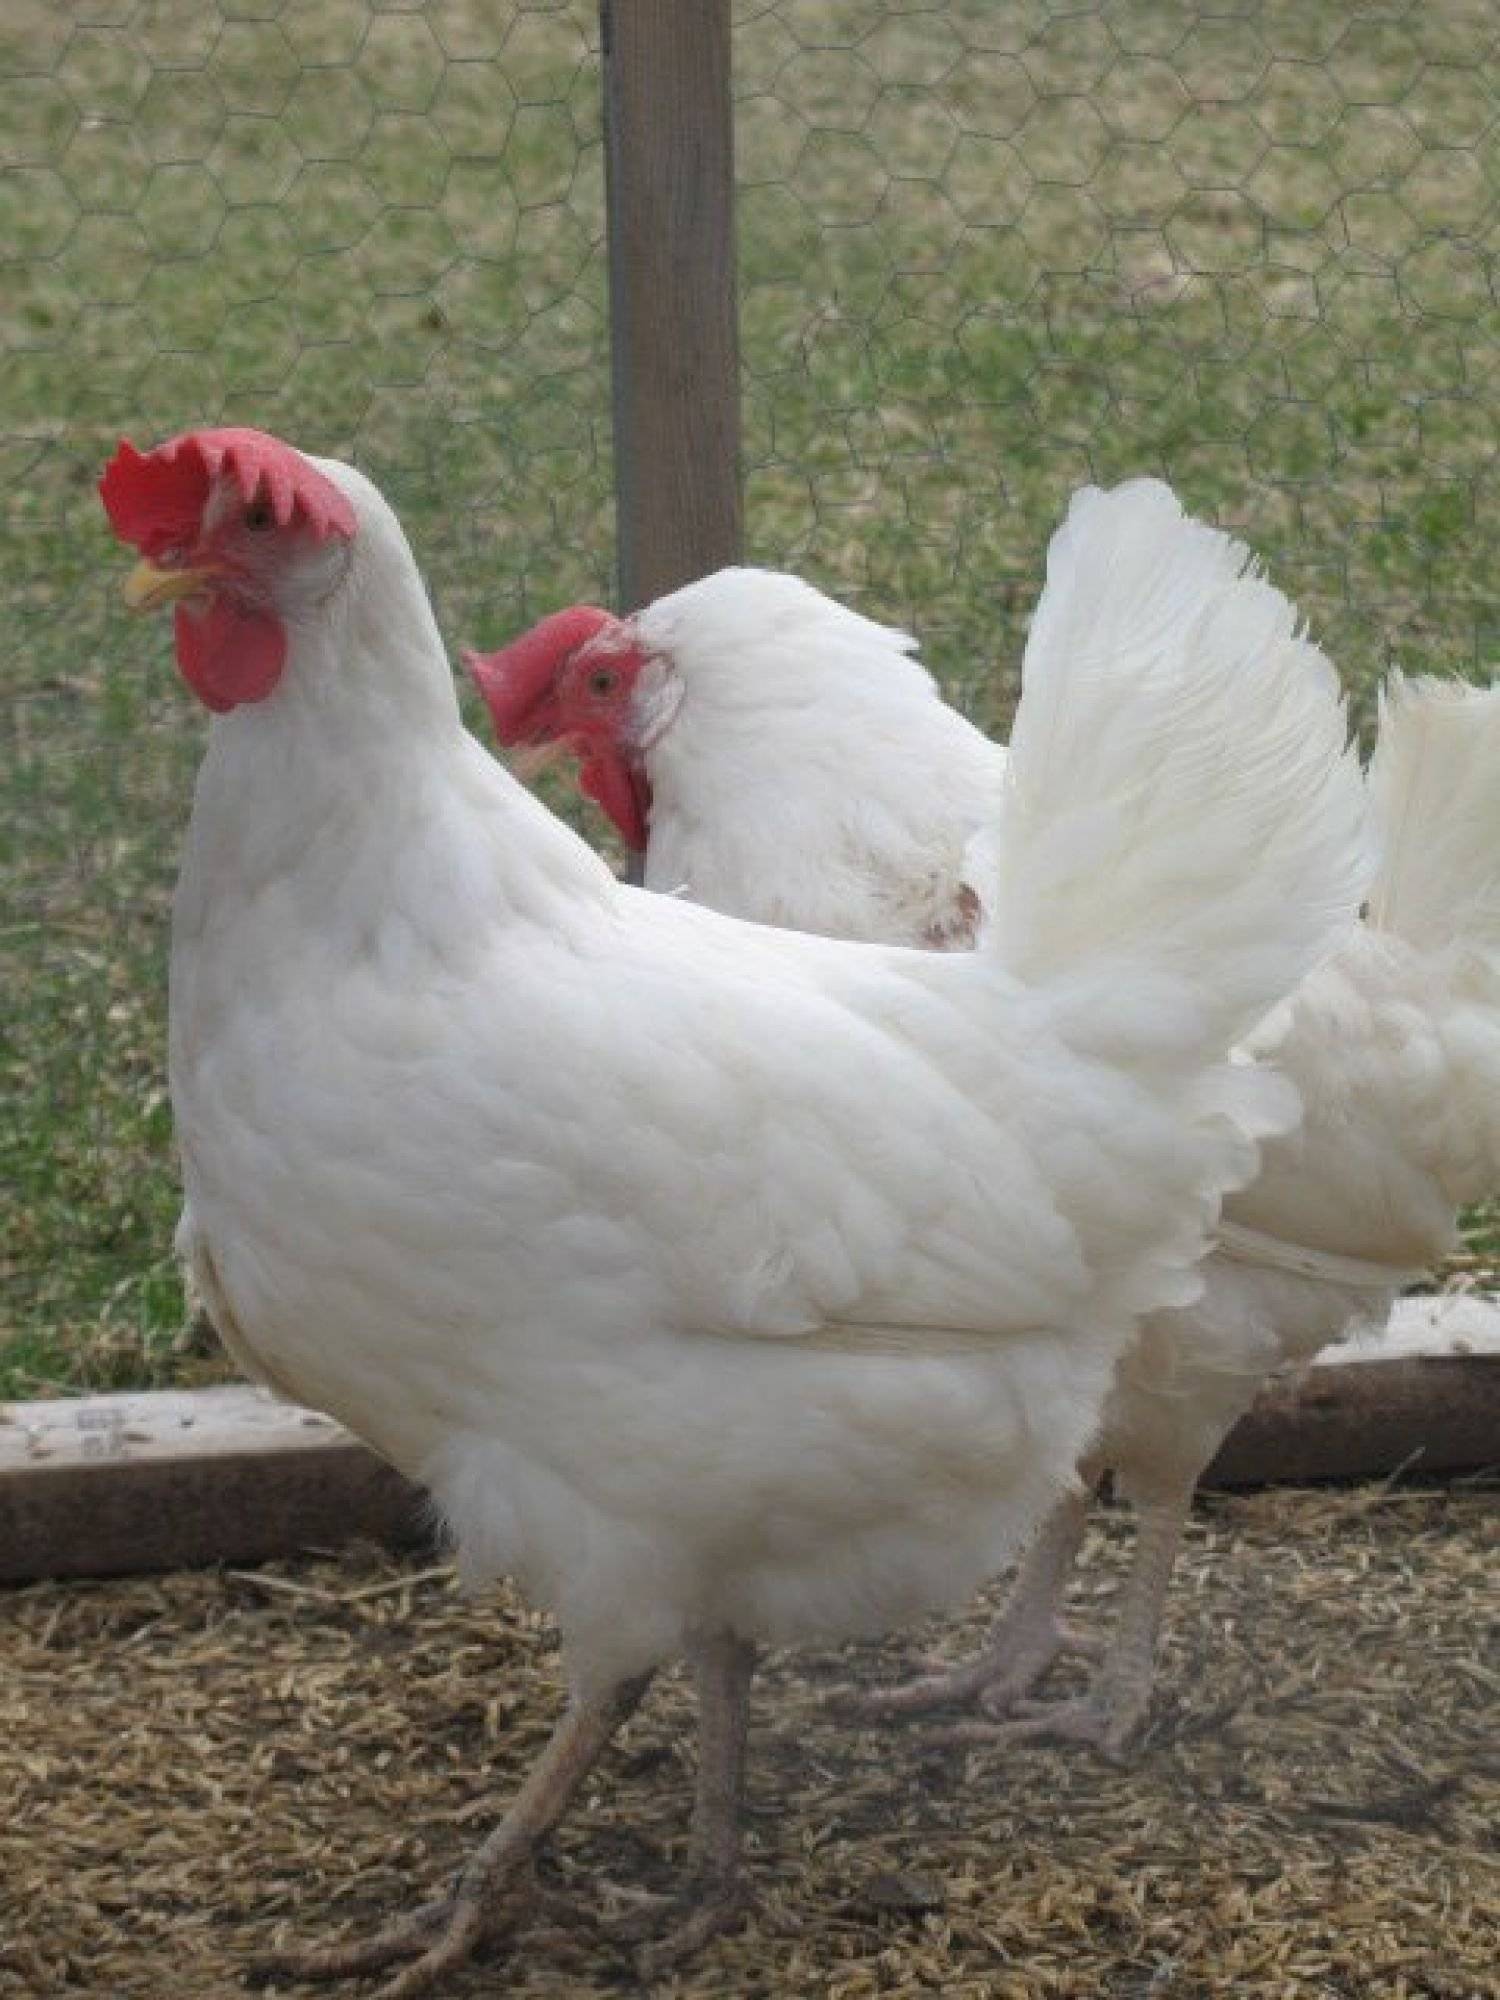 Кросс хайсекс уайт и браун: описание и особенности породы куриц, правила разведения